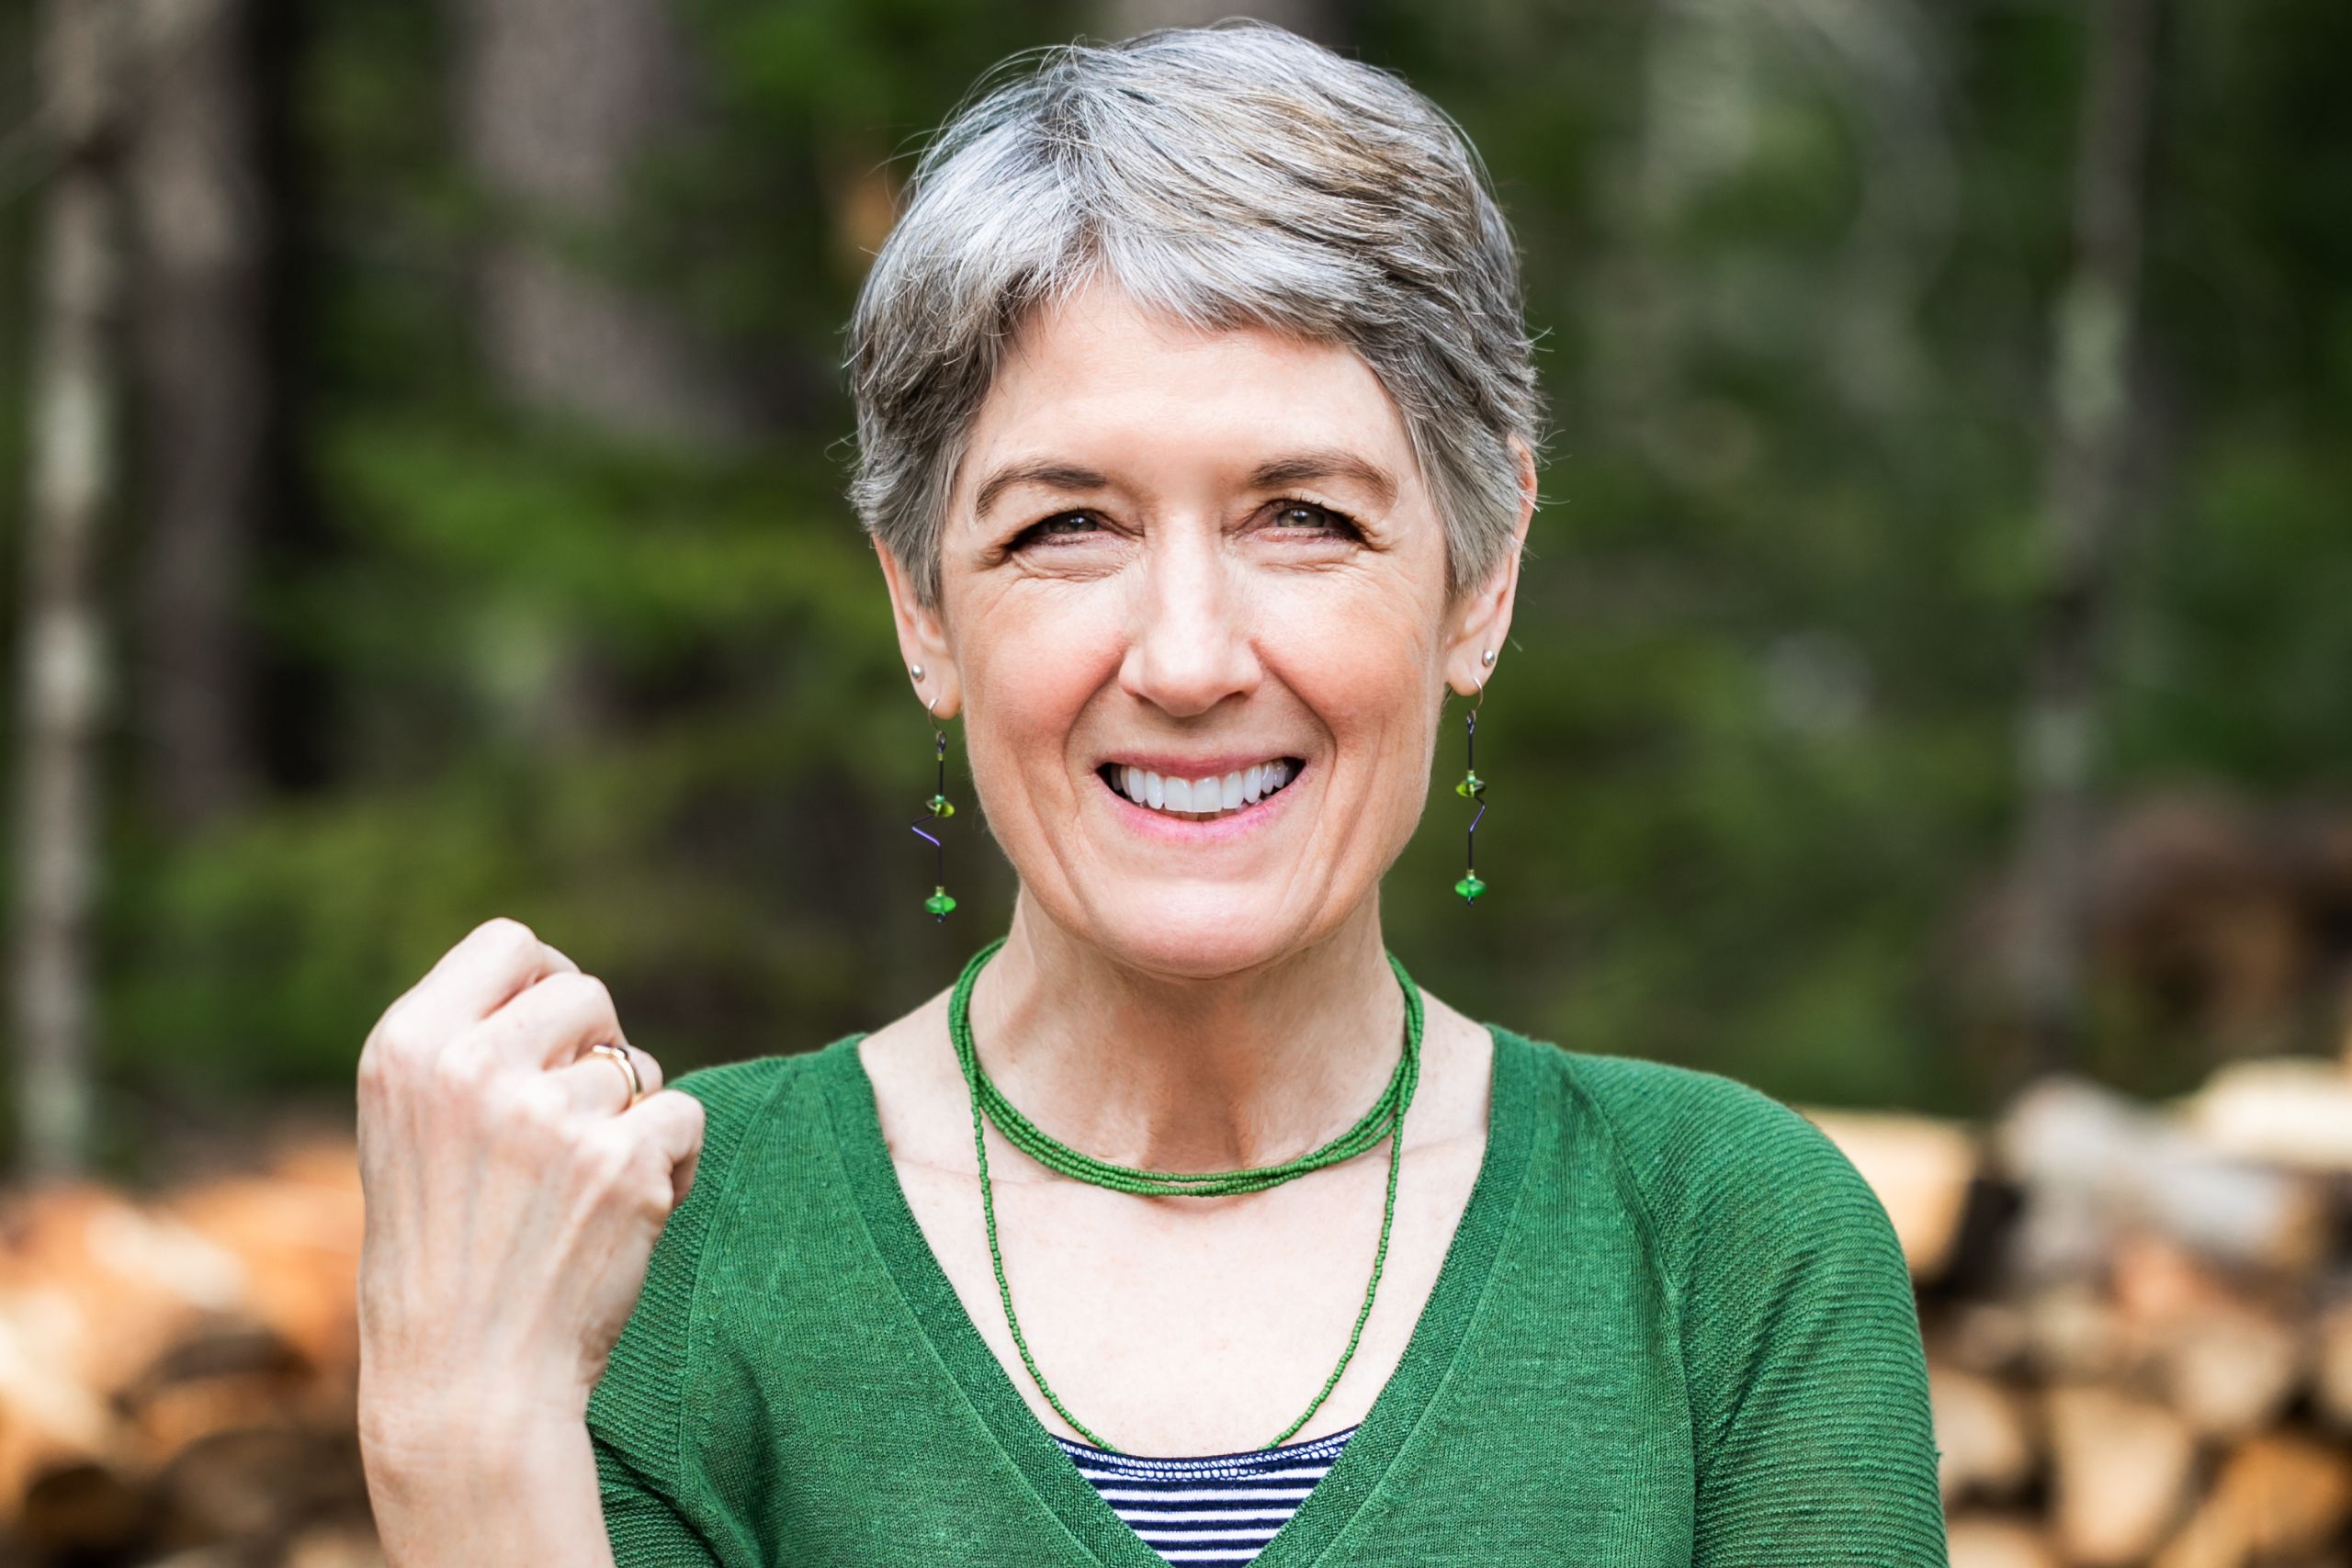 Headshot of a woman wearing a green shirt